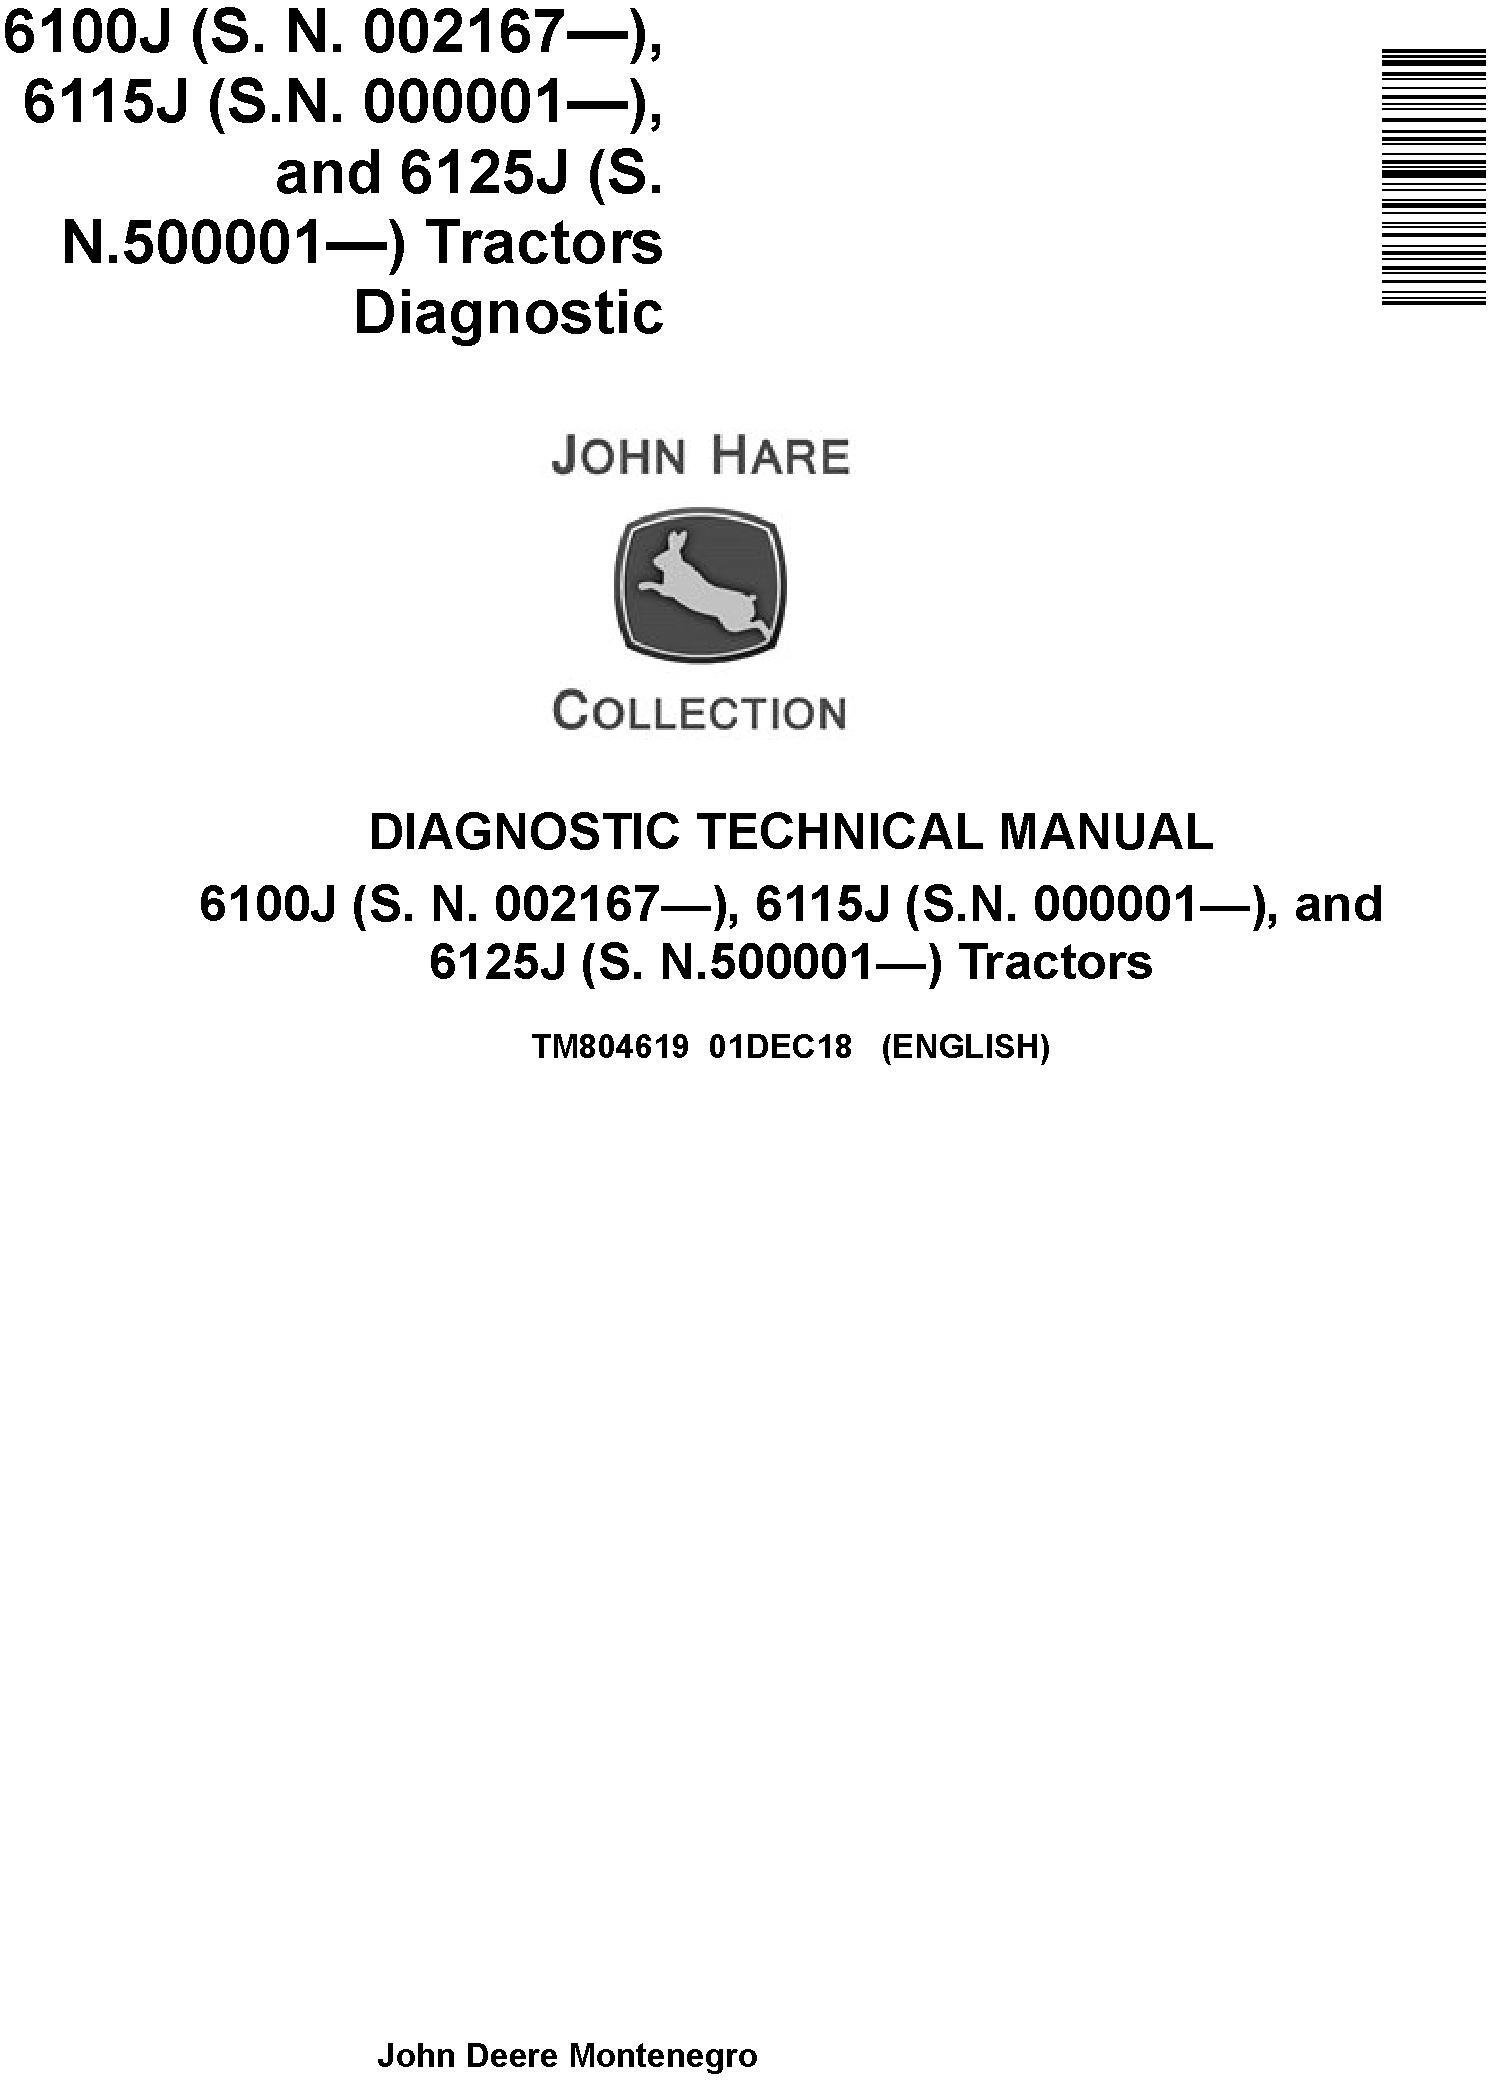 John Deere 6100J, 6115J, 6125J Tractors Diagnostic Technical Service Manual (TM804619) - 19140